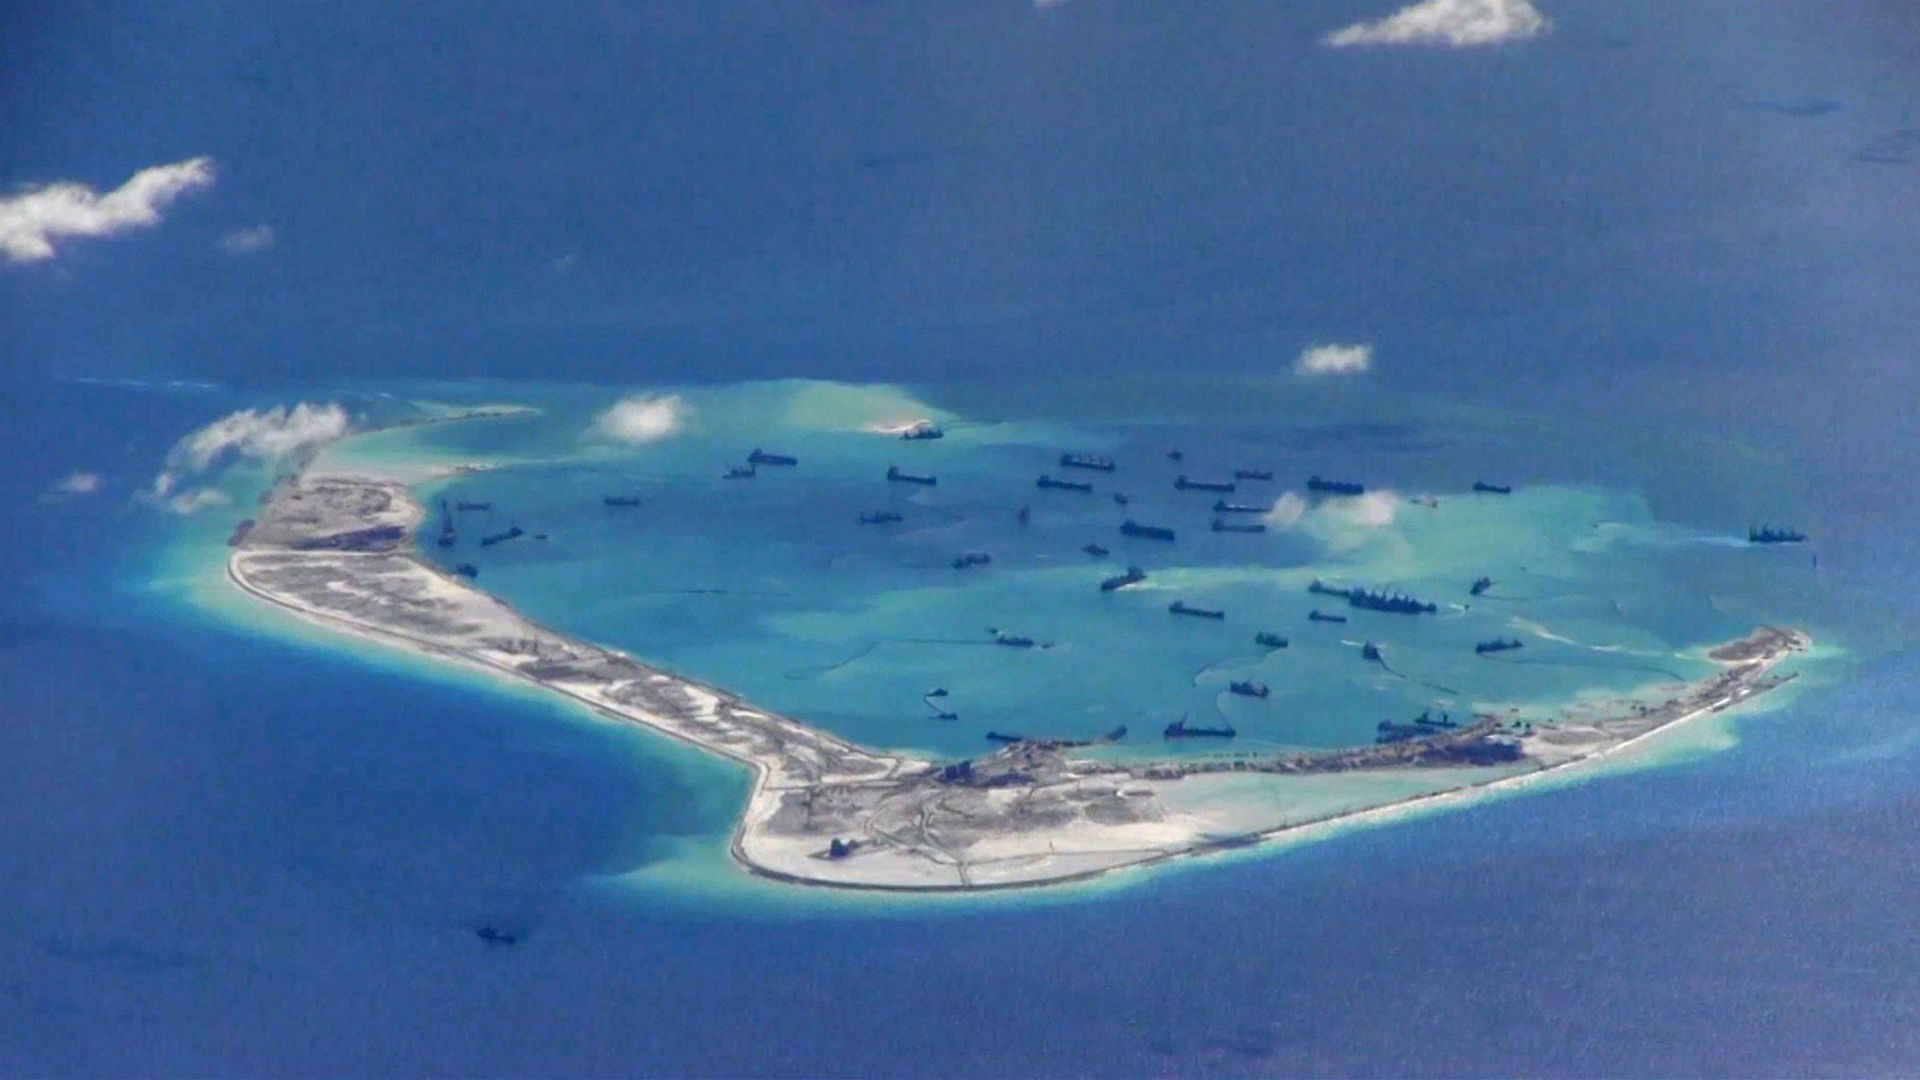 Movimientos de naves chinas cerca de las islas Spratly en el Mar de China Meridional. (Reuters)